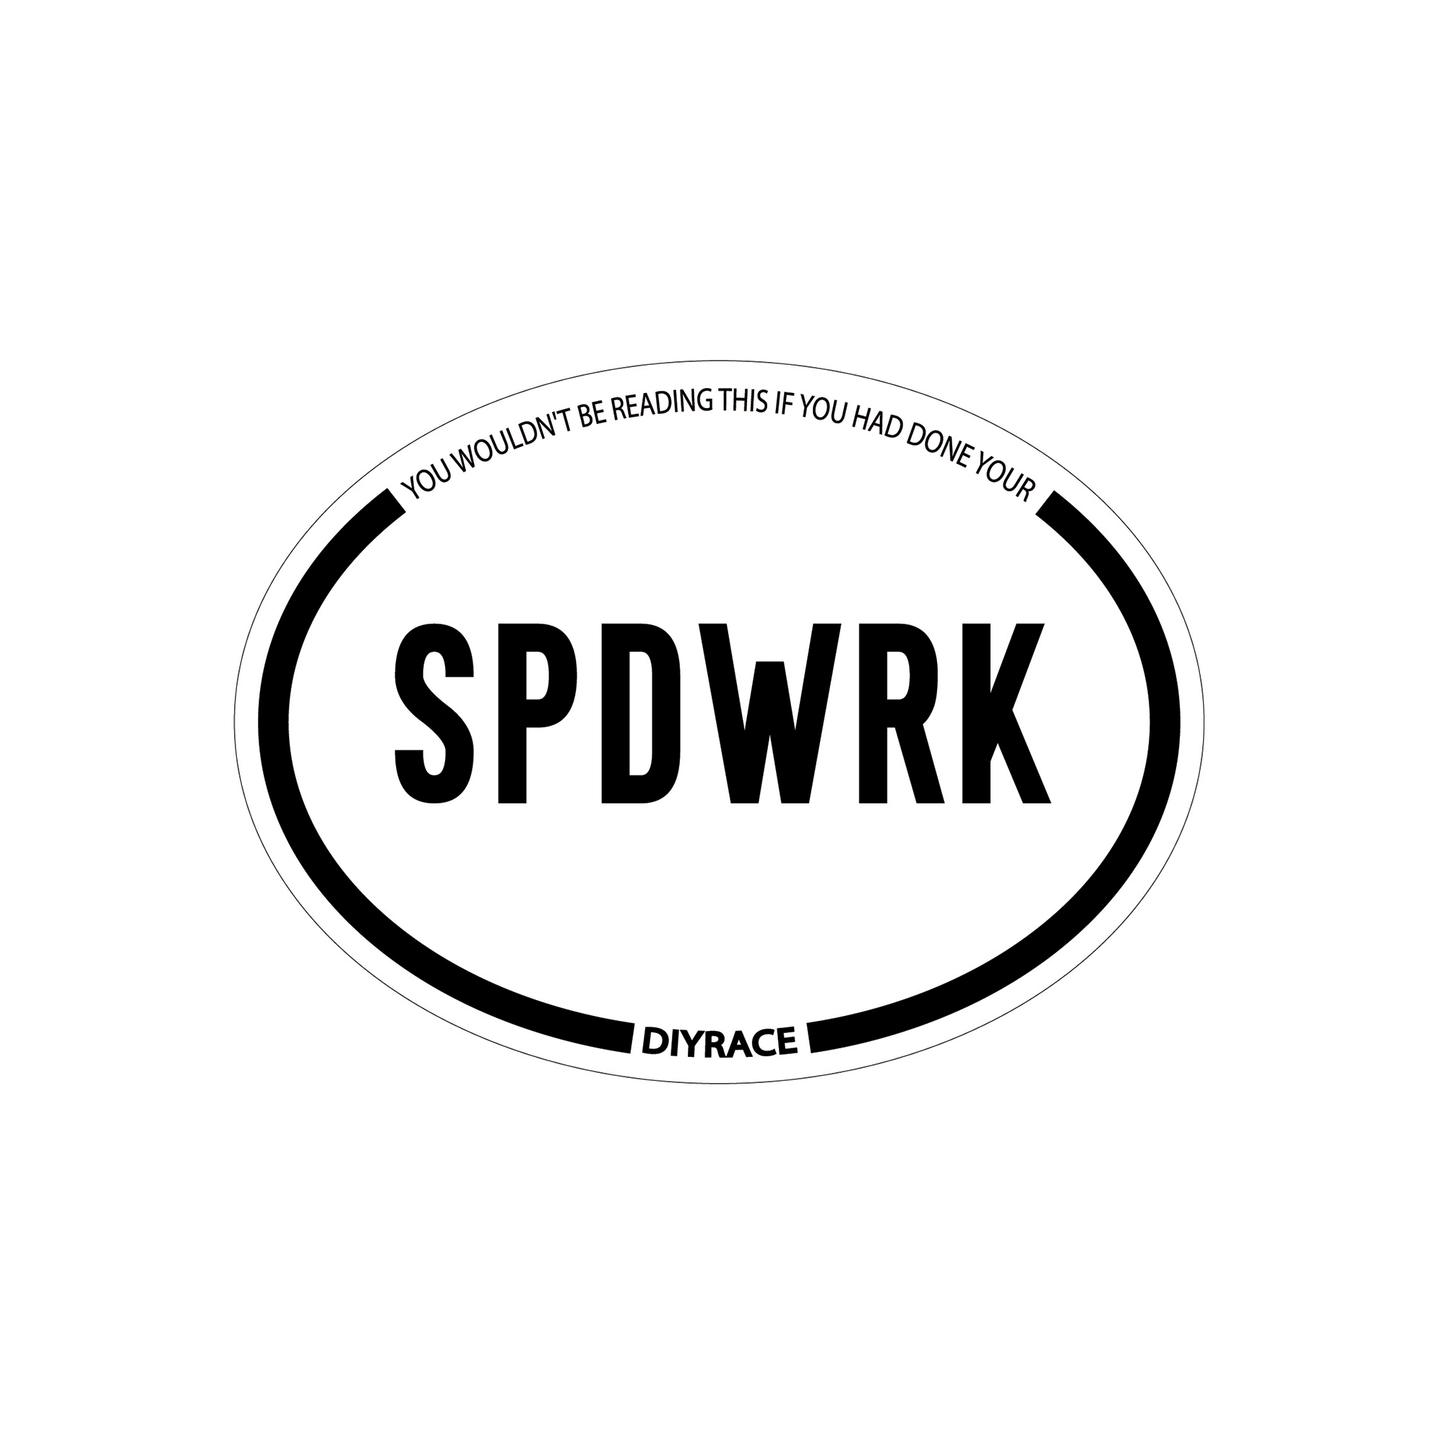 Spdwrk Vinyl Car Decal